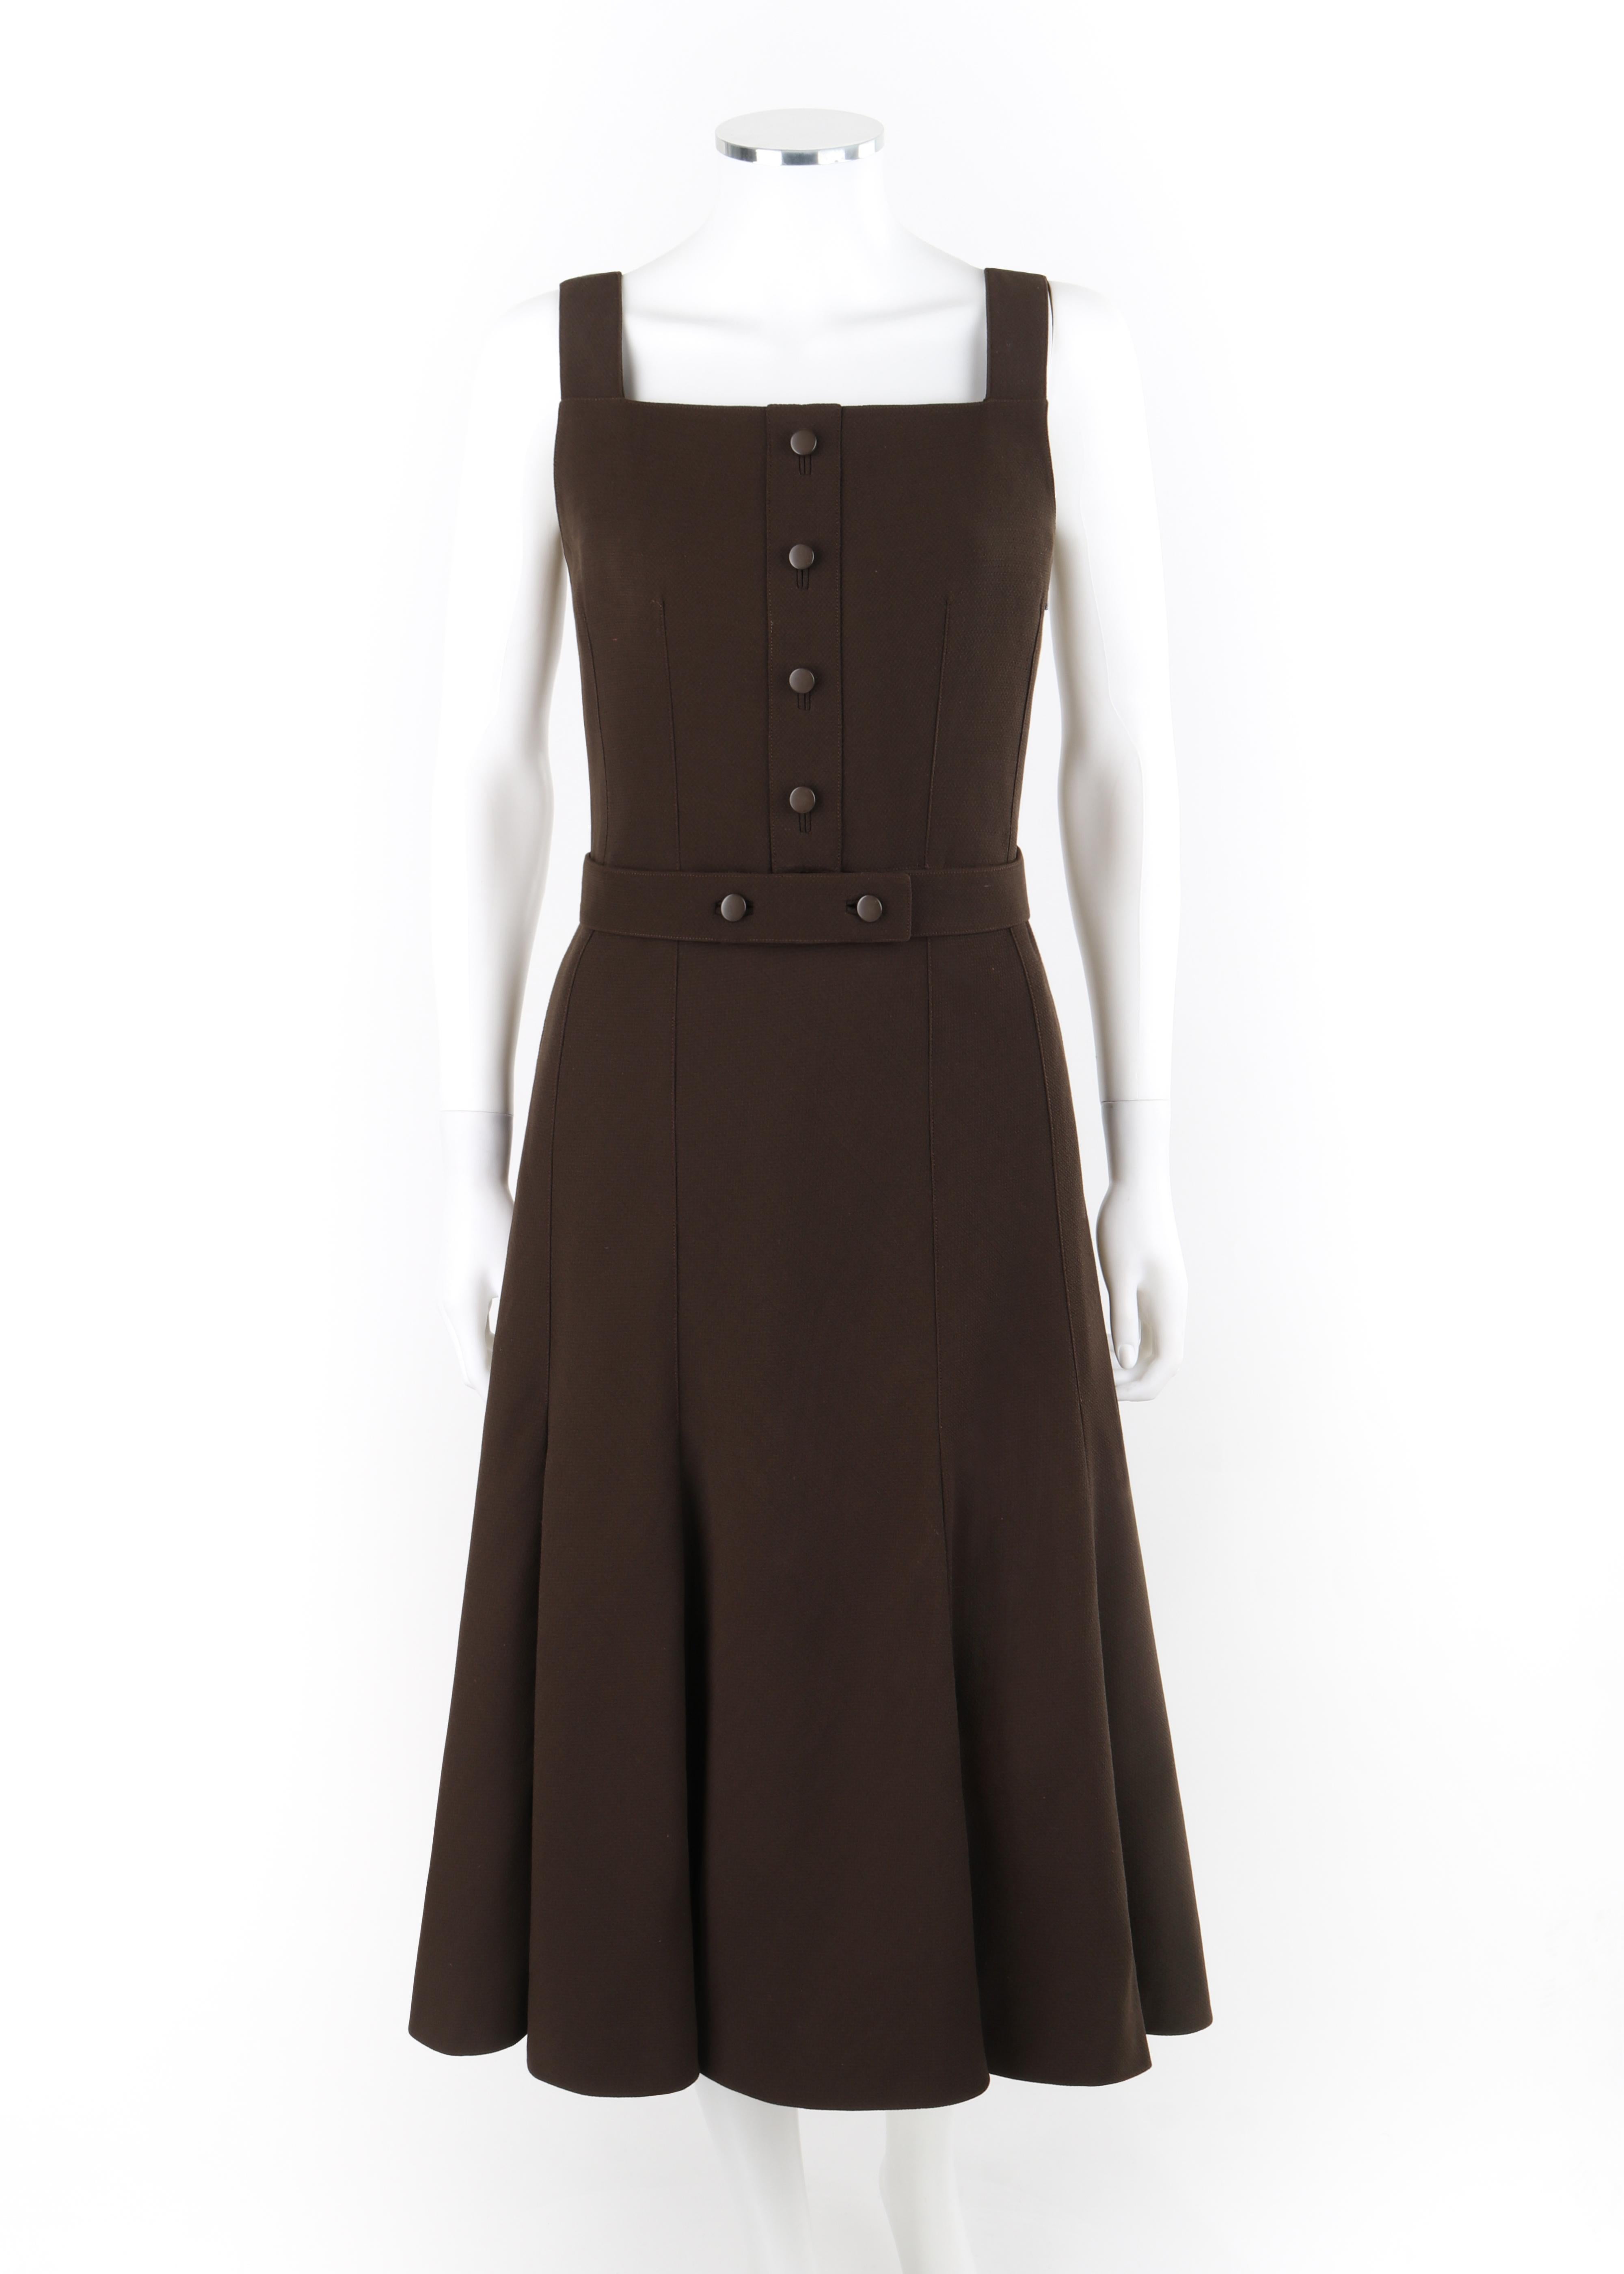 Marke / Hersteller: Courreges
Circa: 1970er Jahre
Stil: Fit & Flare Kleid
Farbe(n): Brauntöne
Gefüttert: Ja
Markierter Stoffgehalt: 